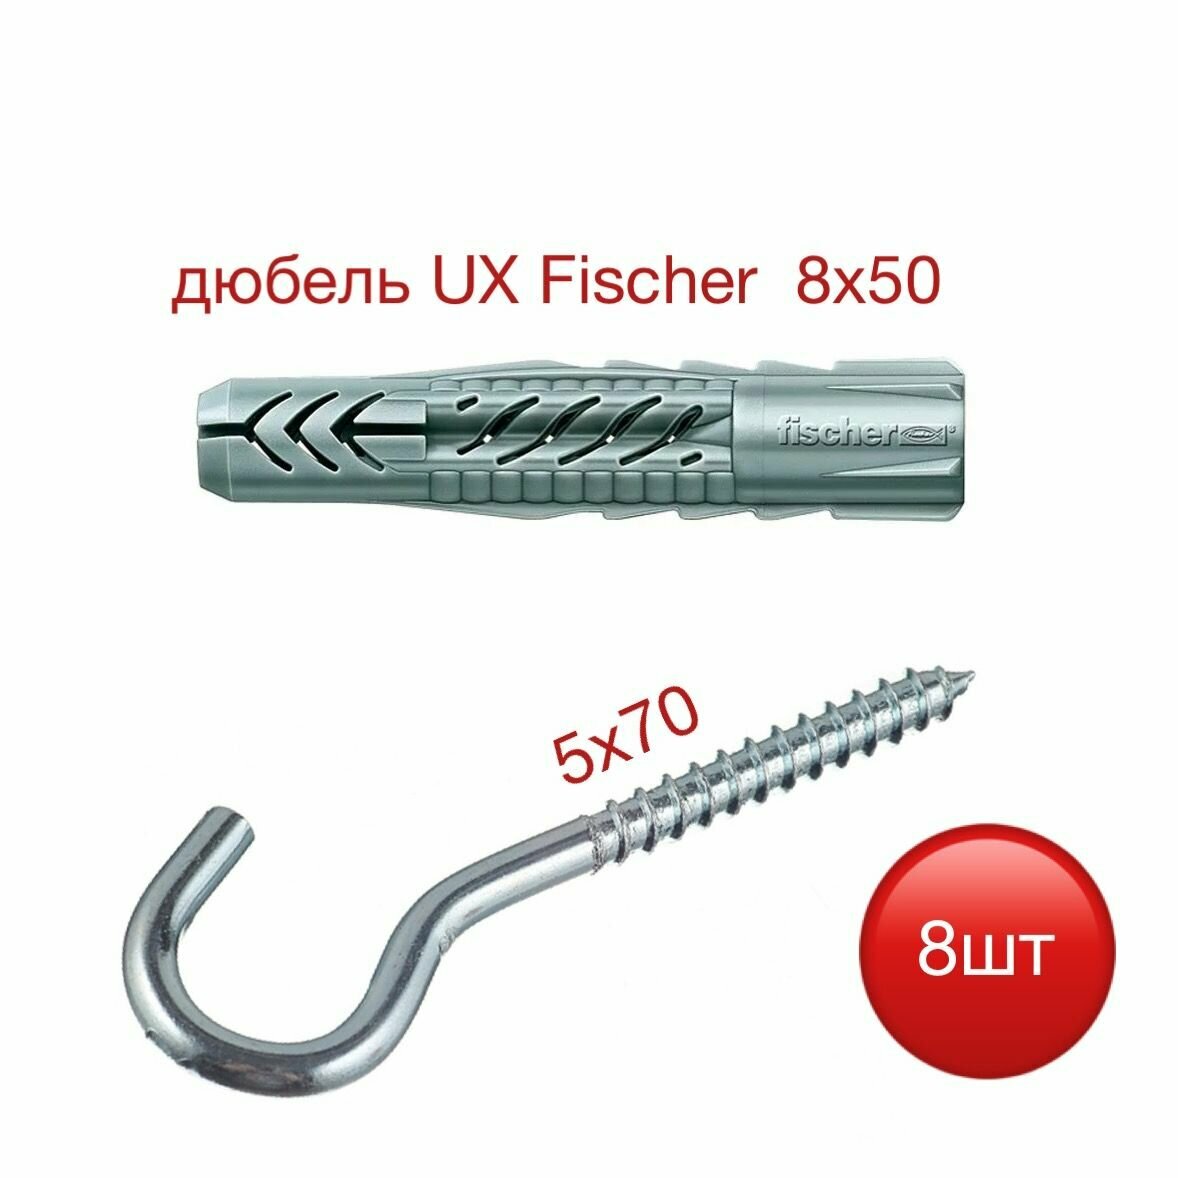 Дюбель UX 8х50 Fischer с шурупом-крюком 5х70